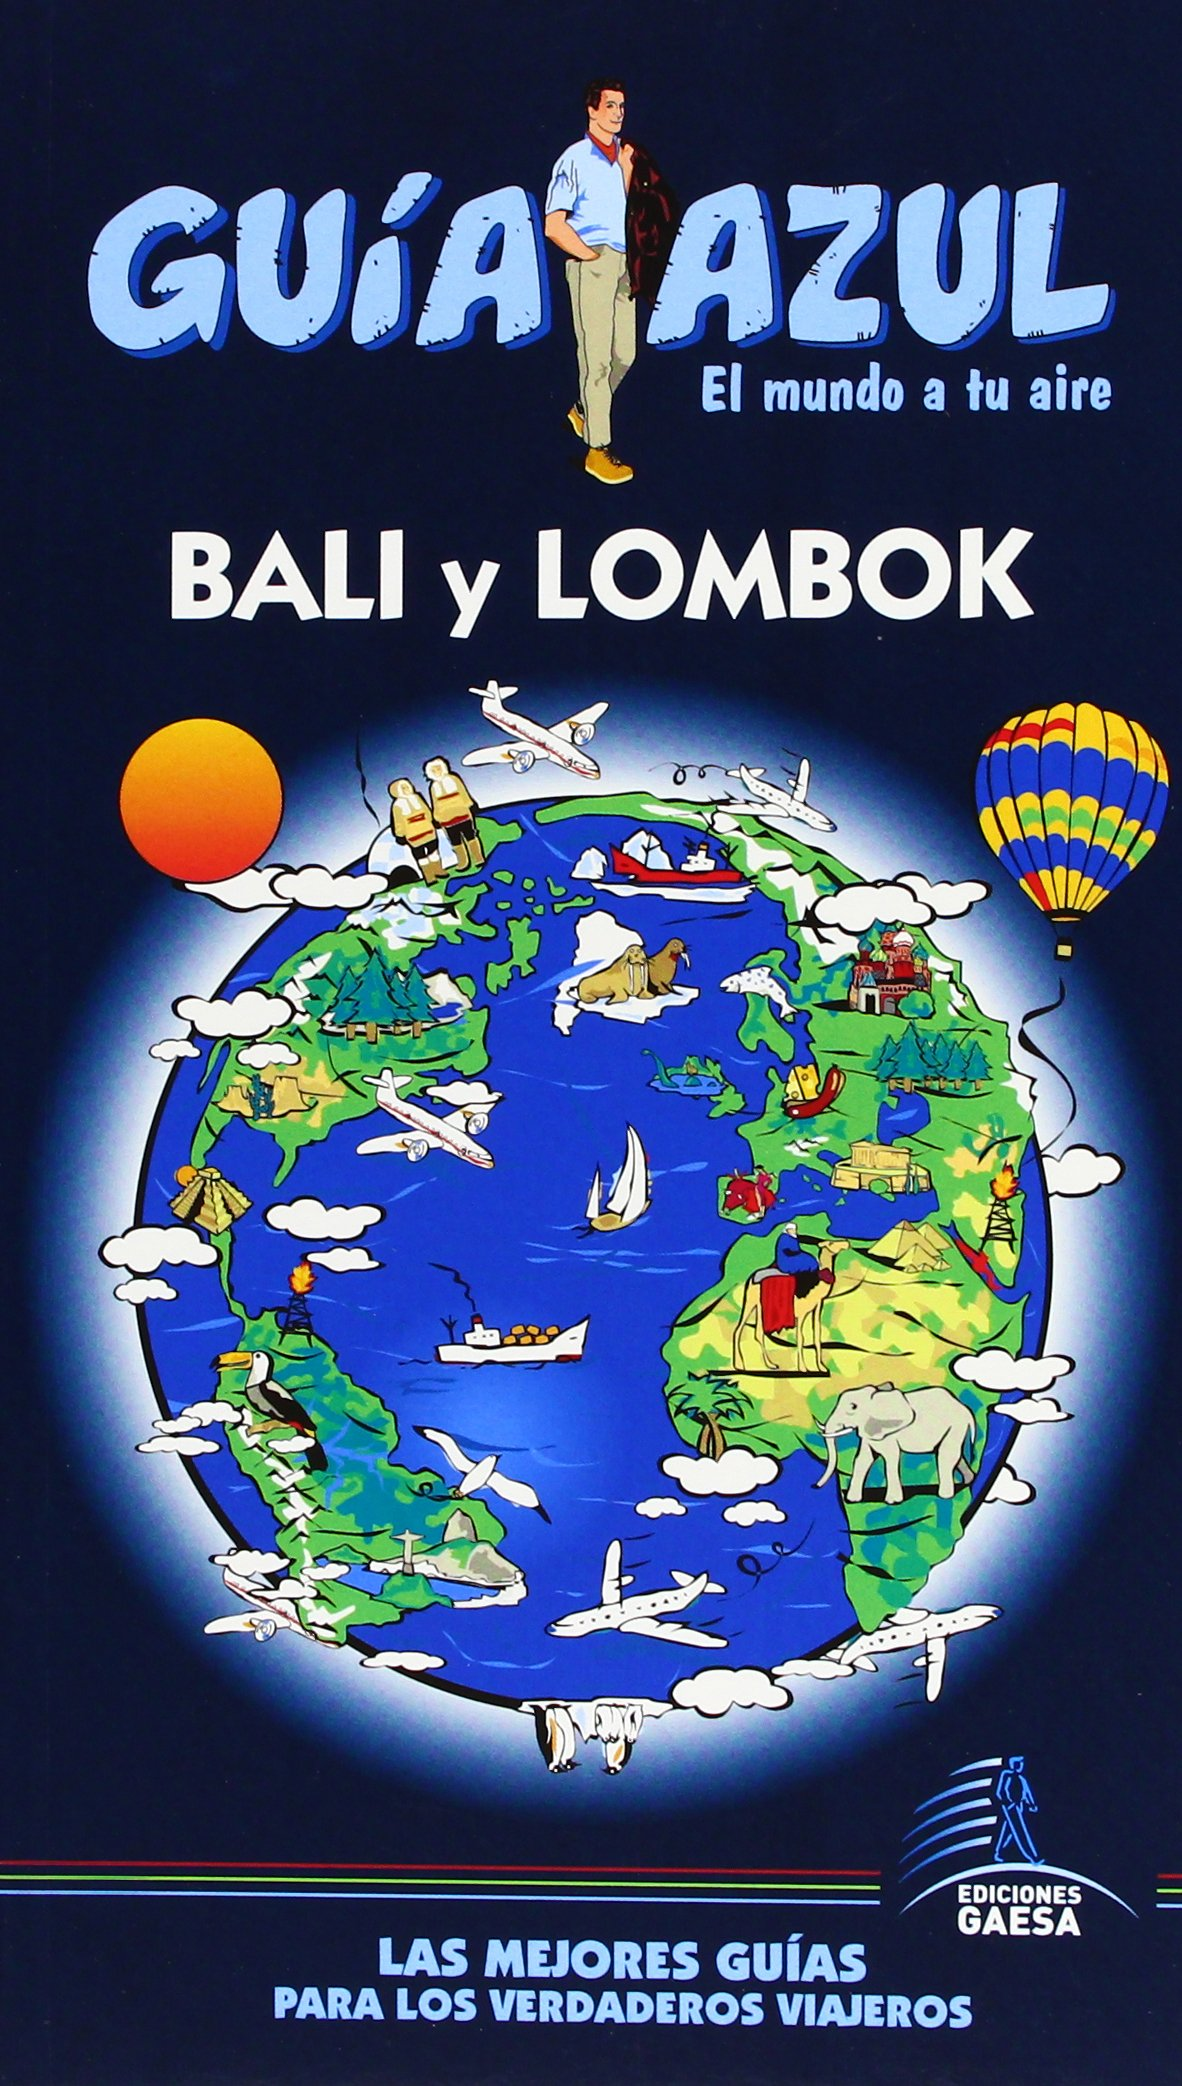 Bali y Lombok / Bali and Lombok